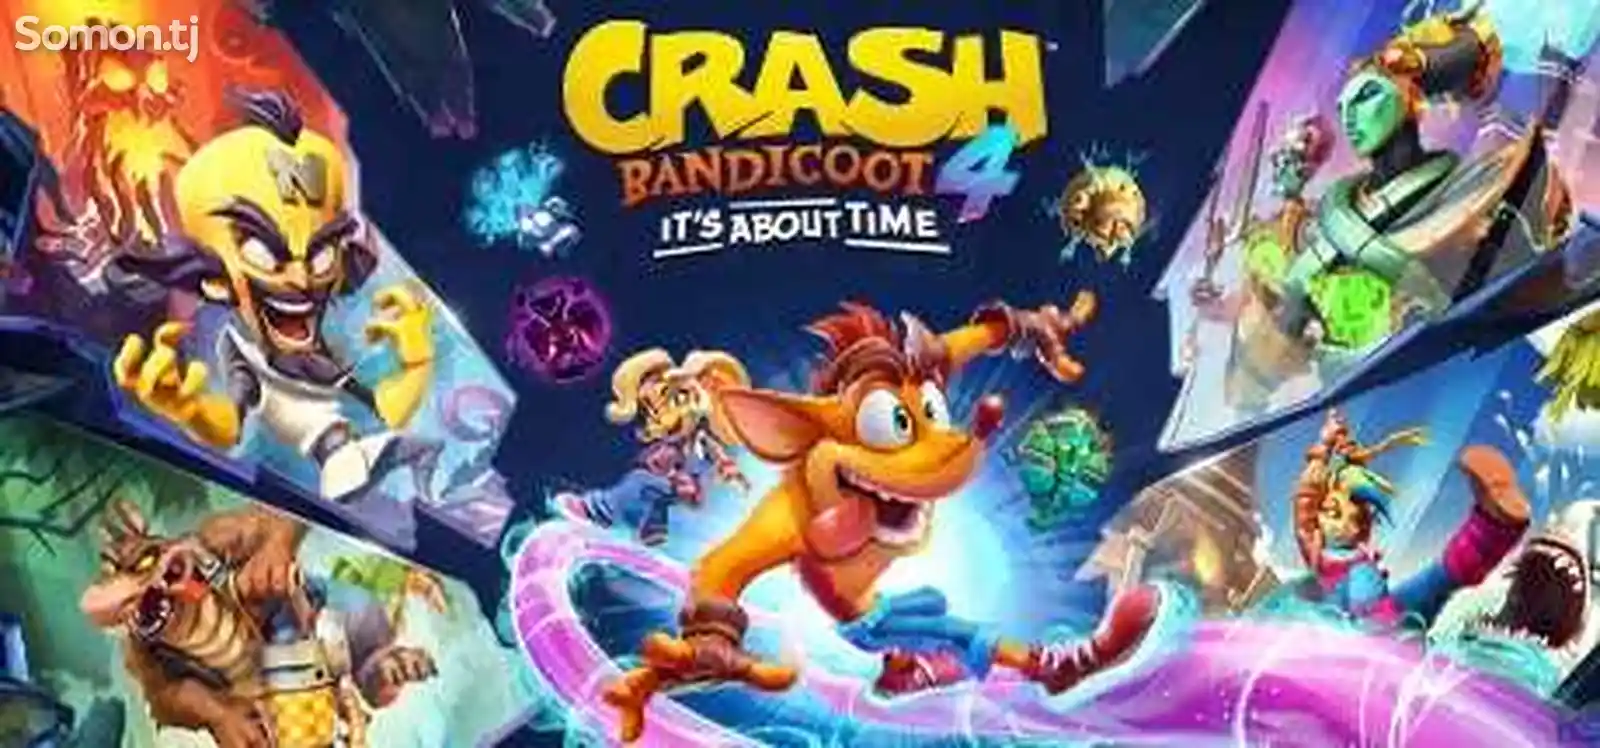 Игра Crah Bandicoot 4 для PS4/5.05/6.72/7.02/7.55/9.00/11.00